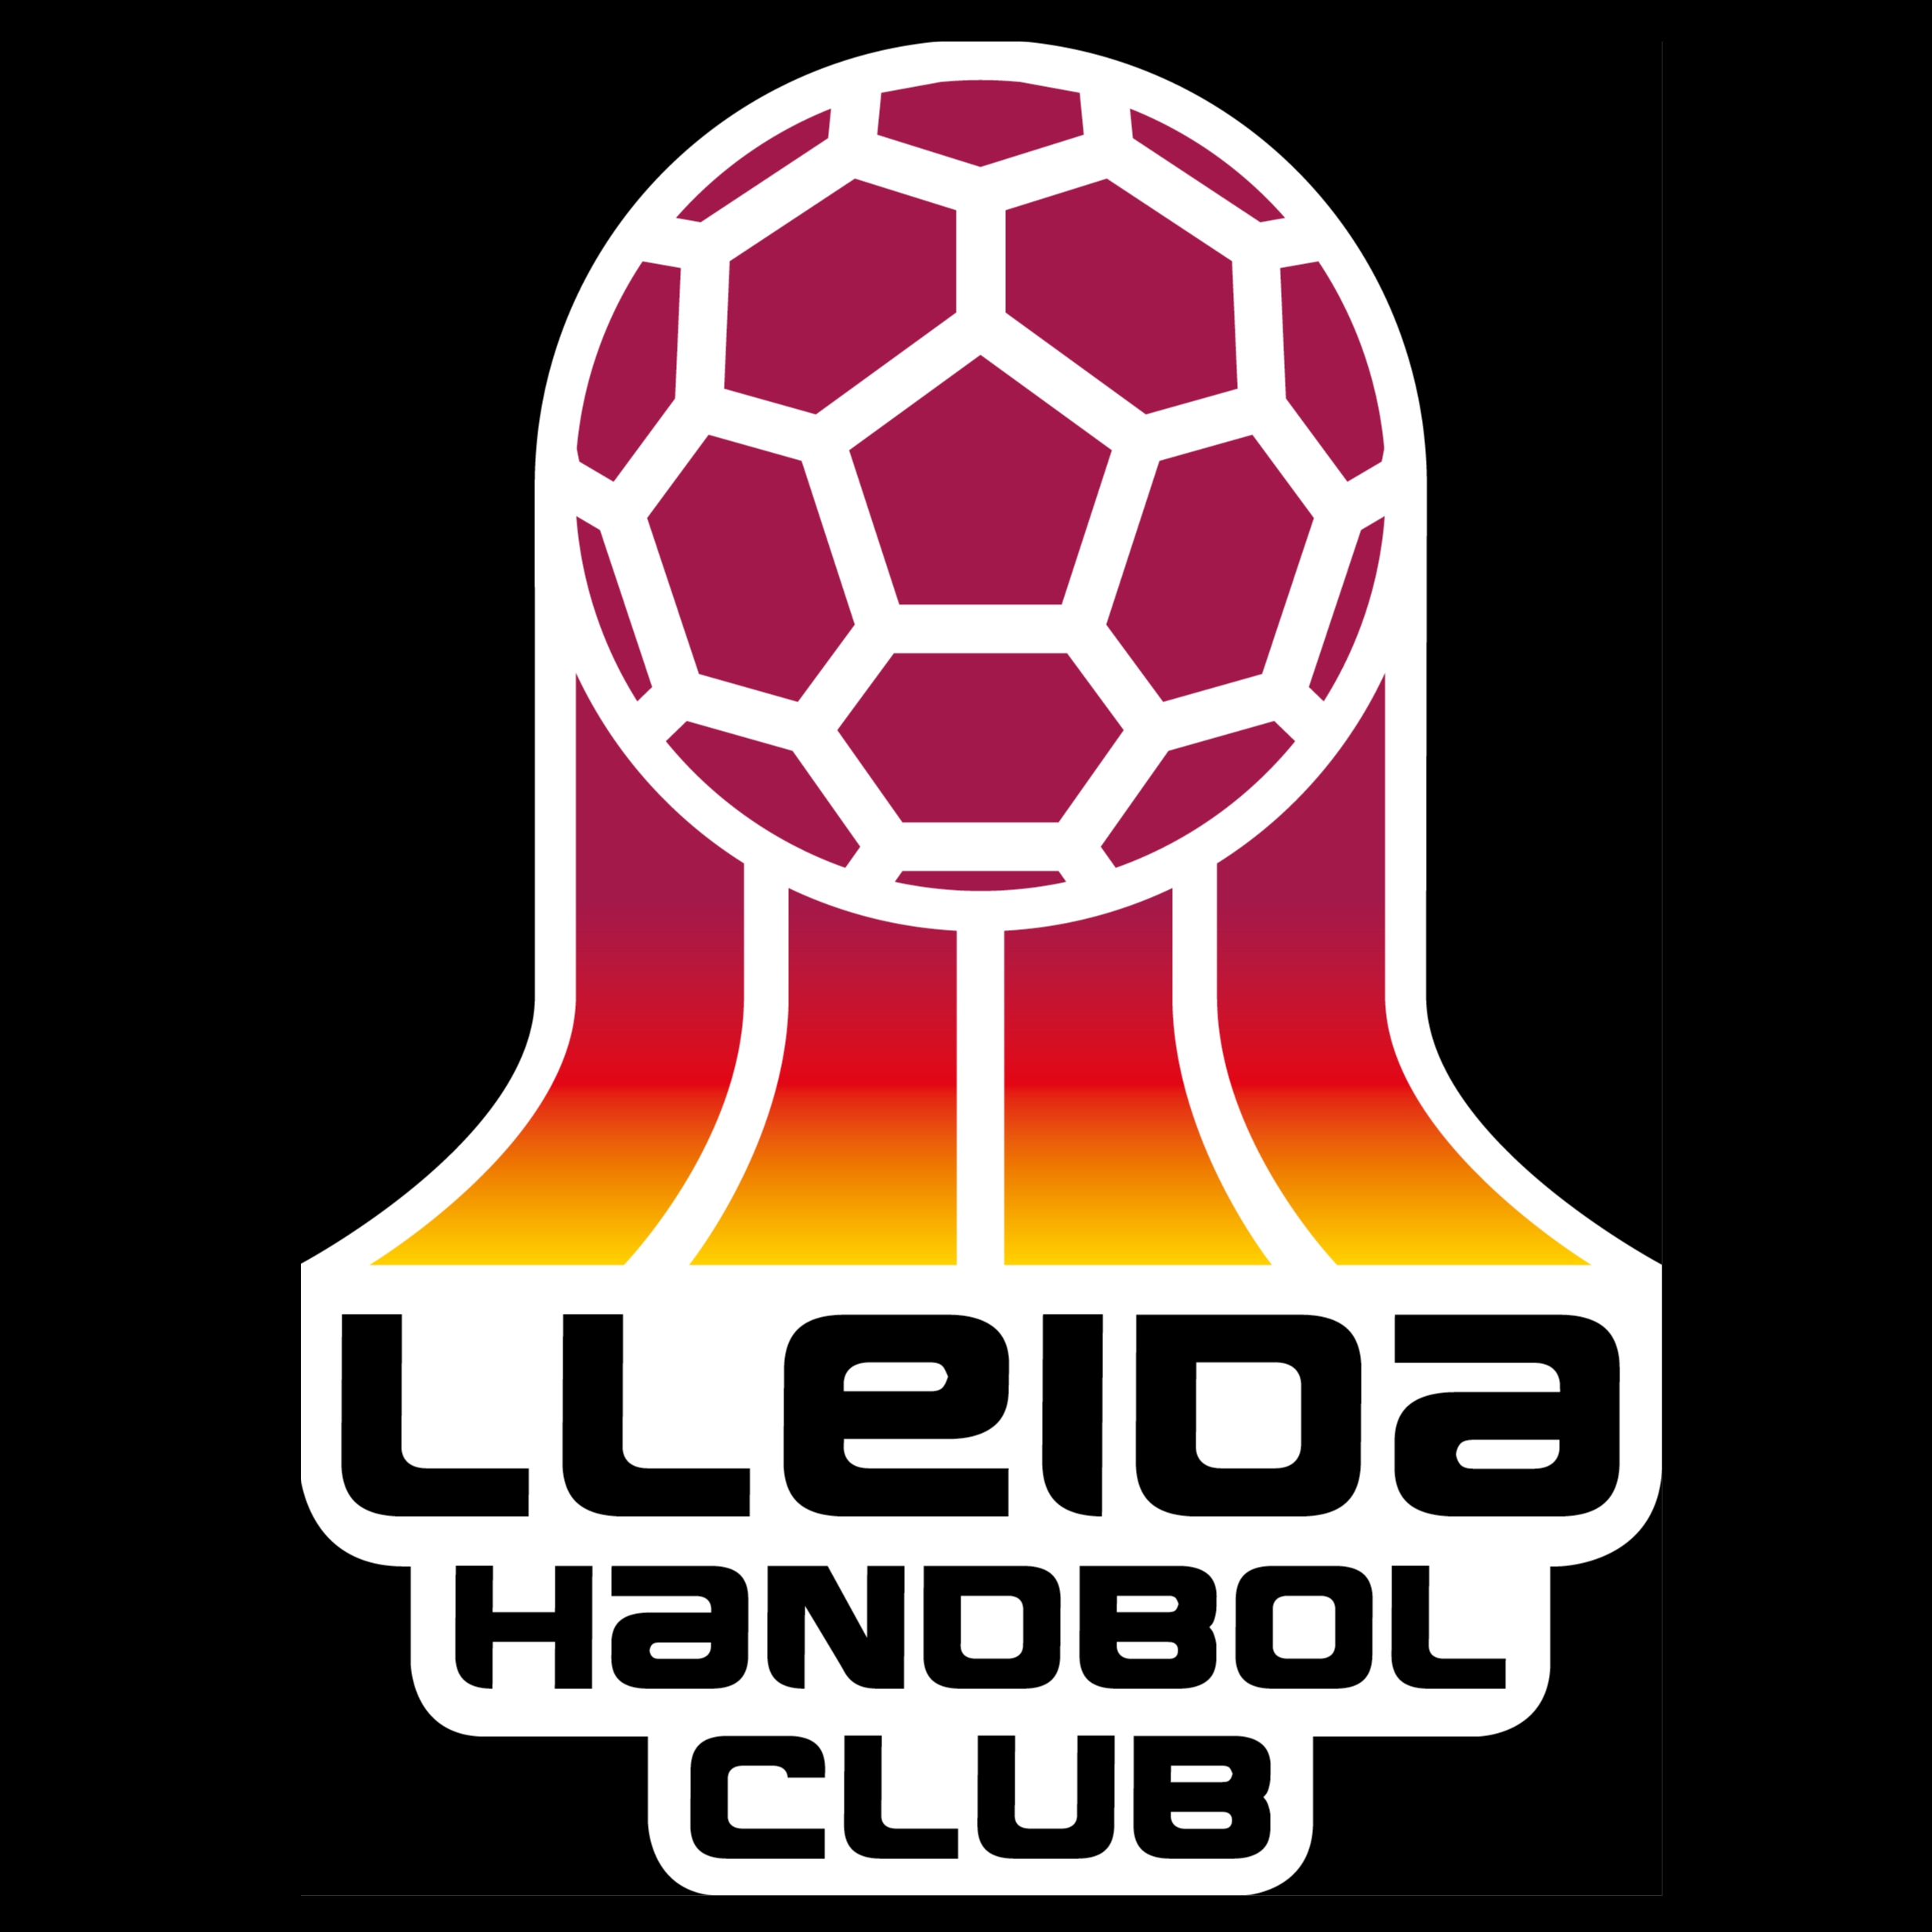 LLEIDA HANDBOL CLUB "A"